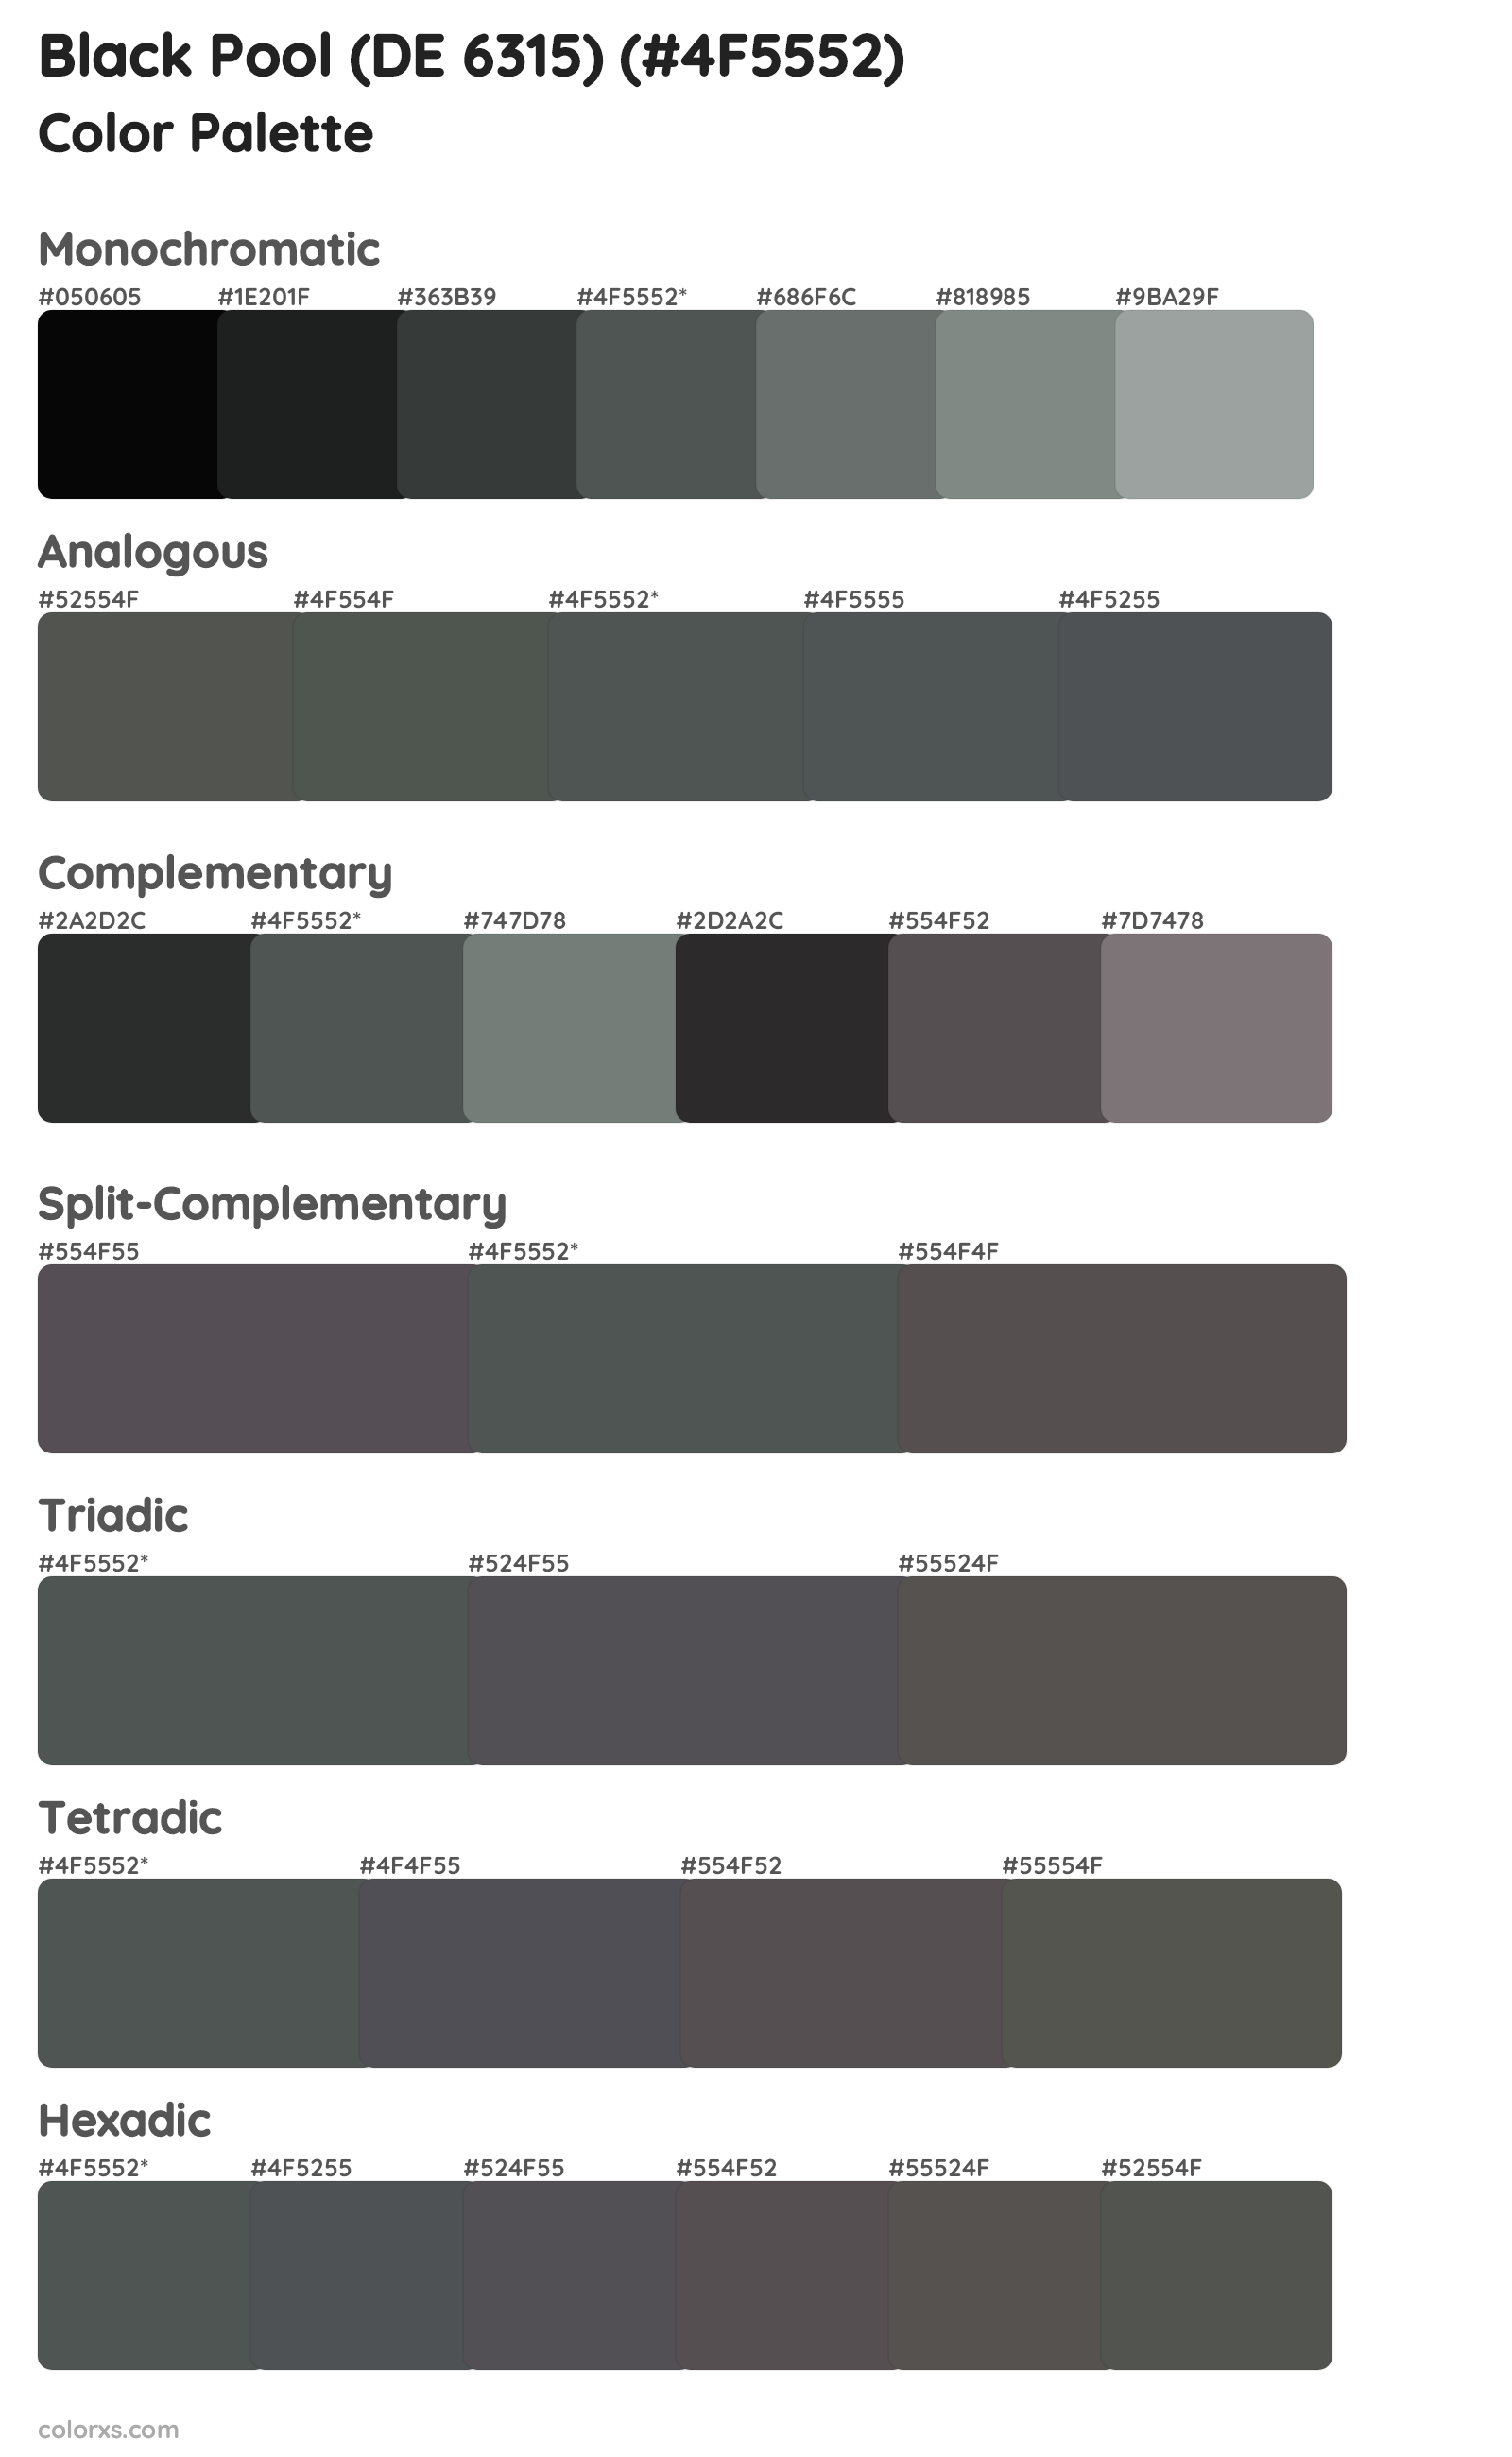 Black Pool (DE 6315) Color Scheme Palettes